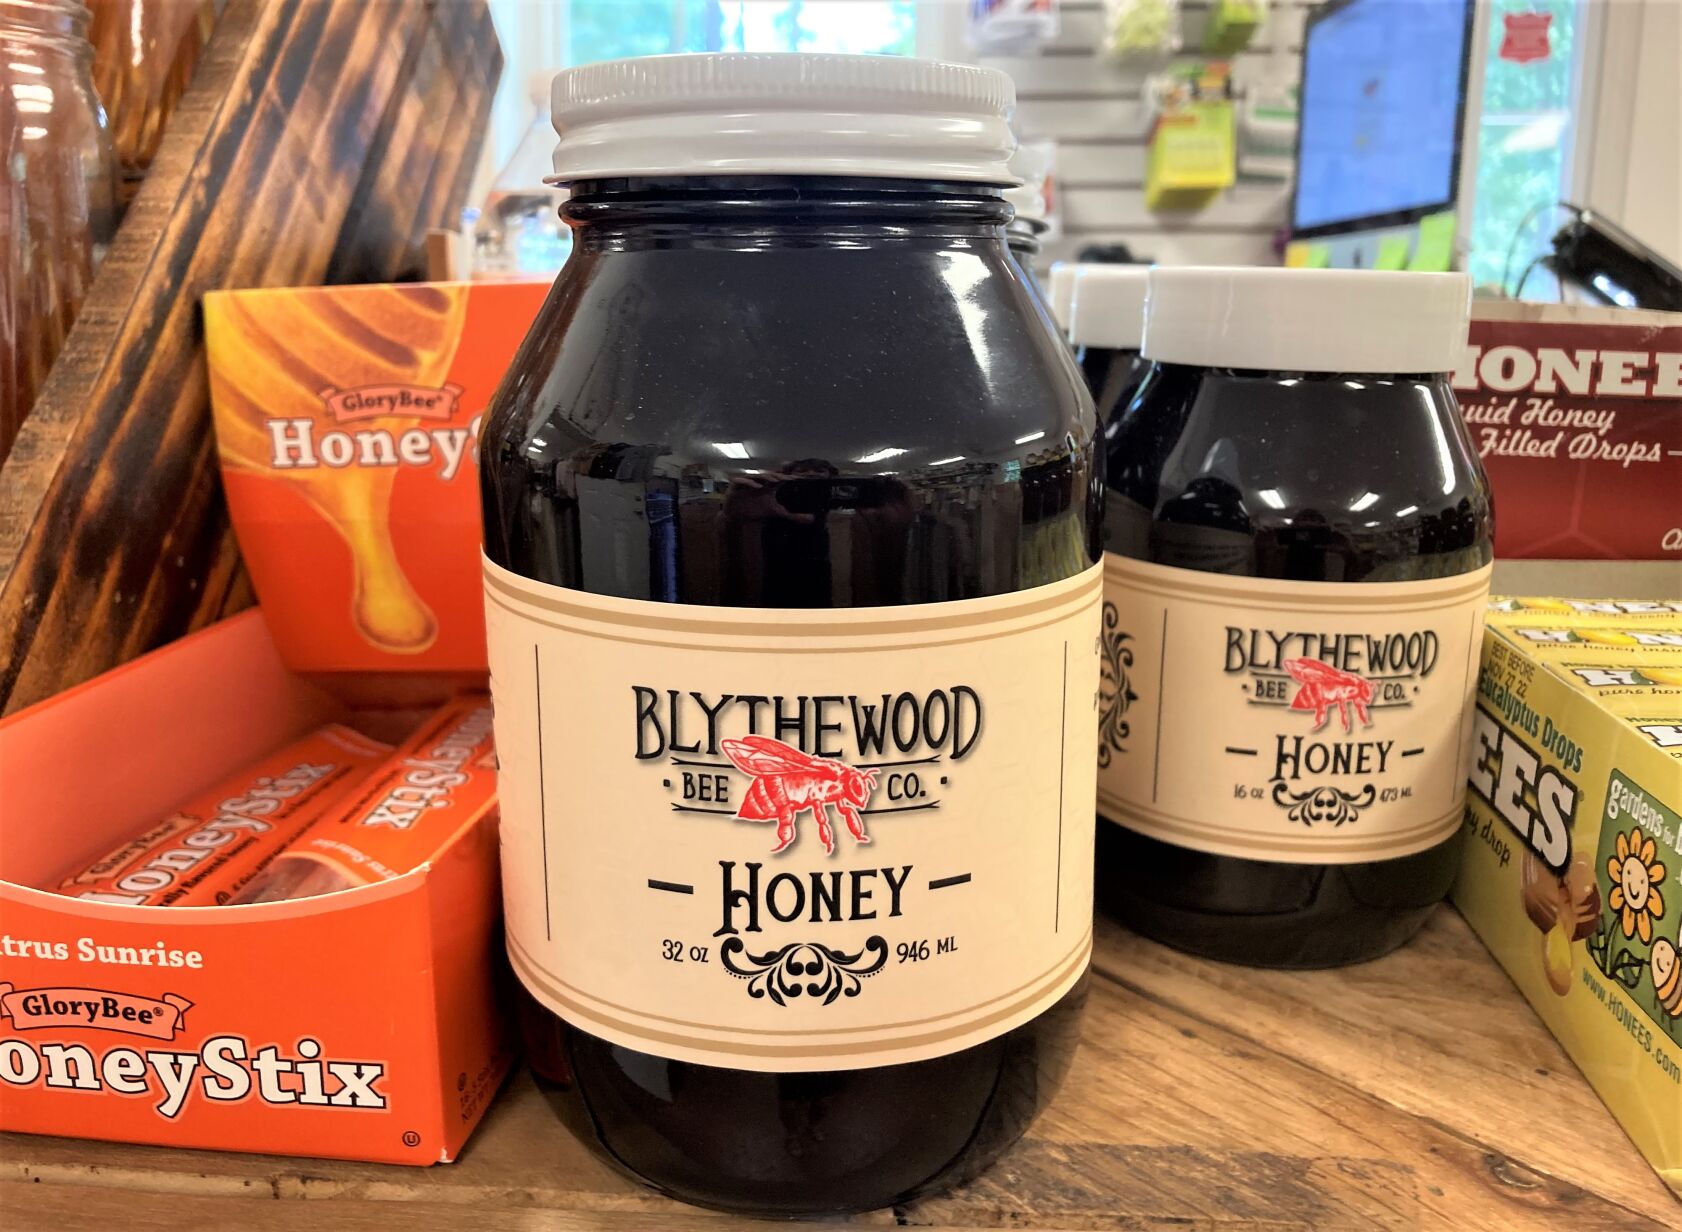 Blythewood Bee Company Honey-B-Gone Honeybee Repellent